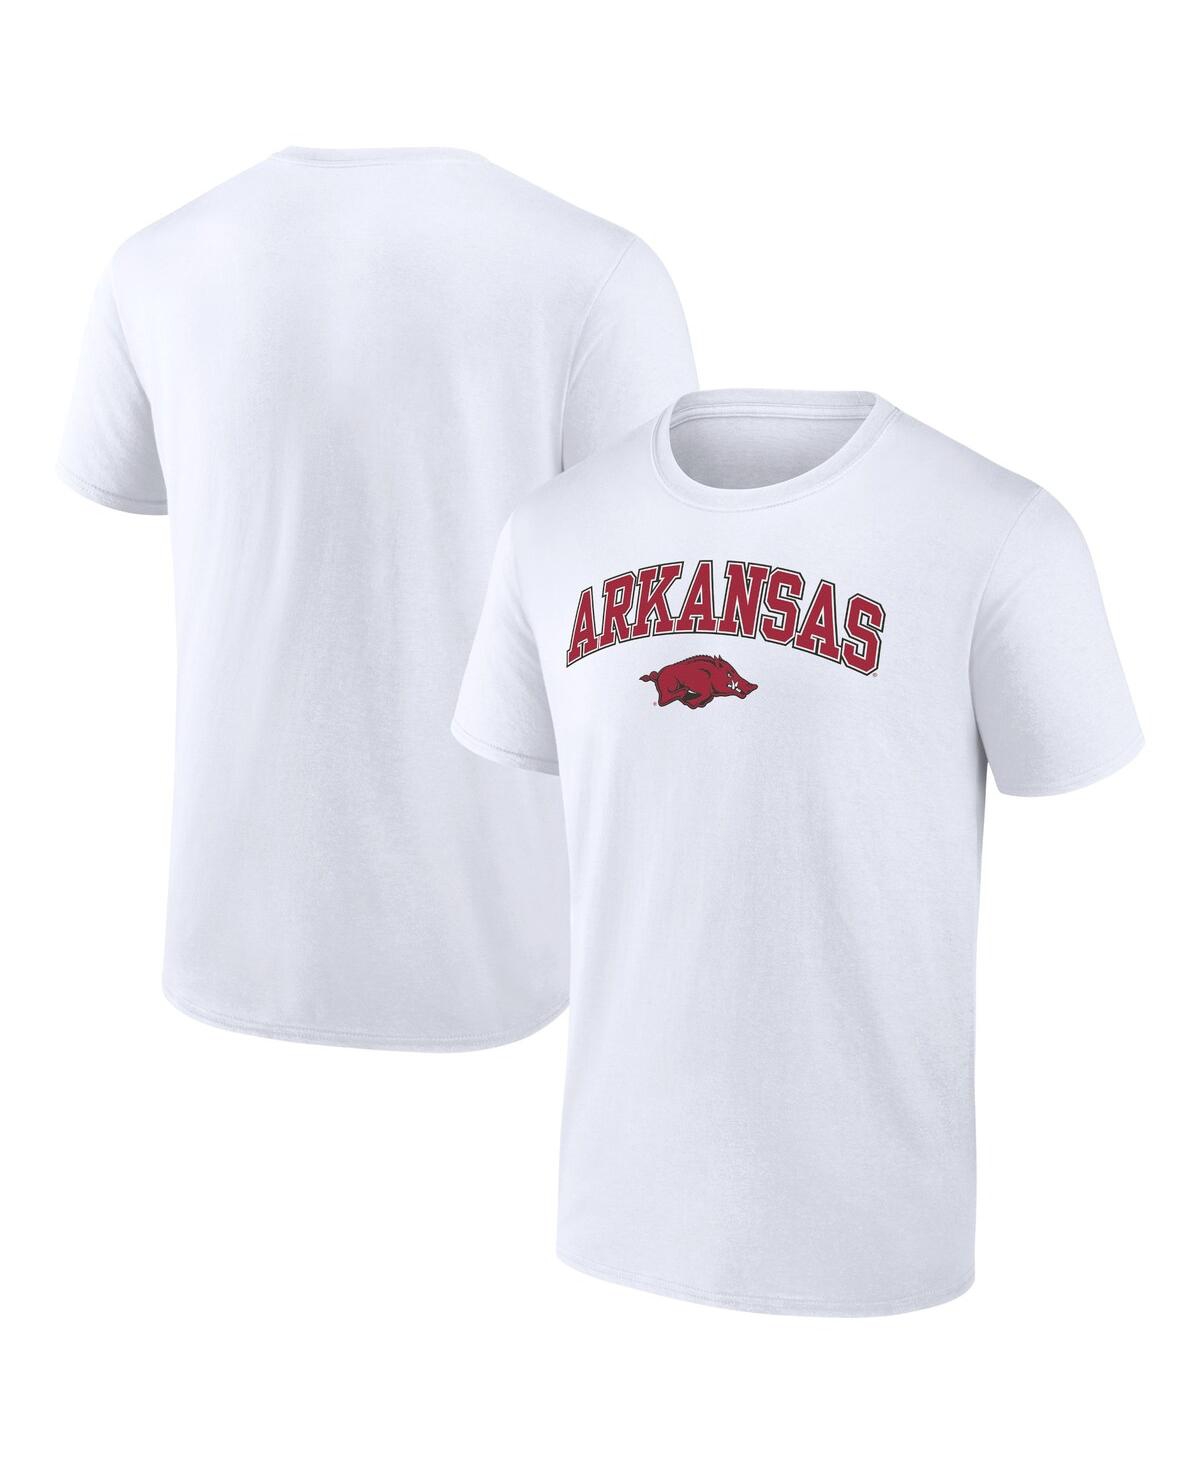 Fanatics Men's  White Texas Tech Red Raiders Campus T-shirt